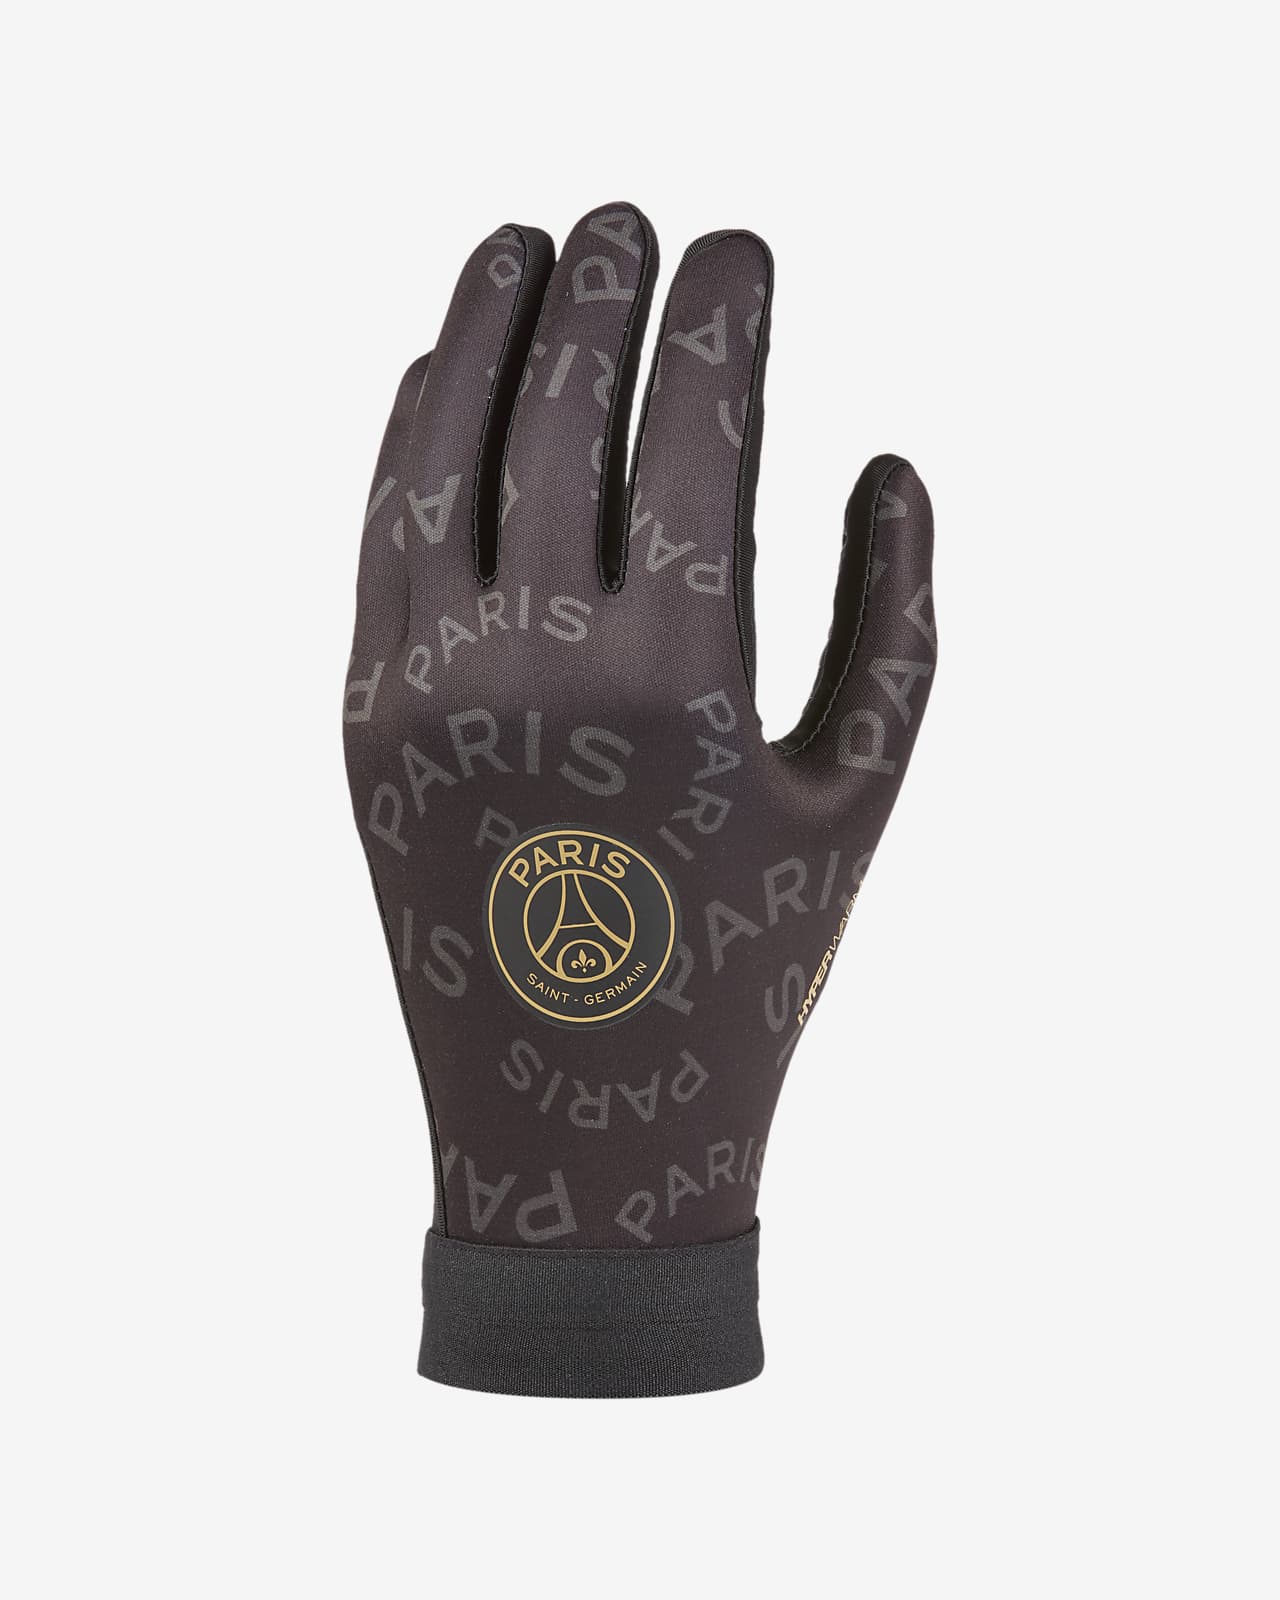 jordan football gloves for sale